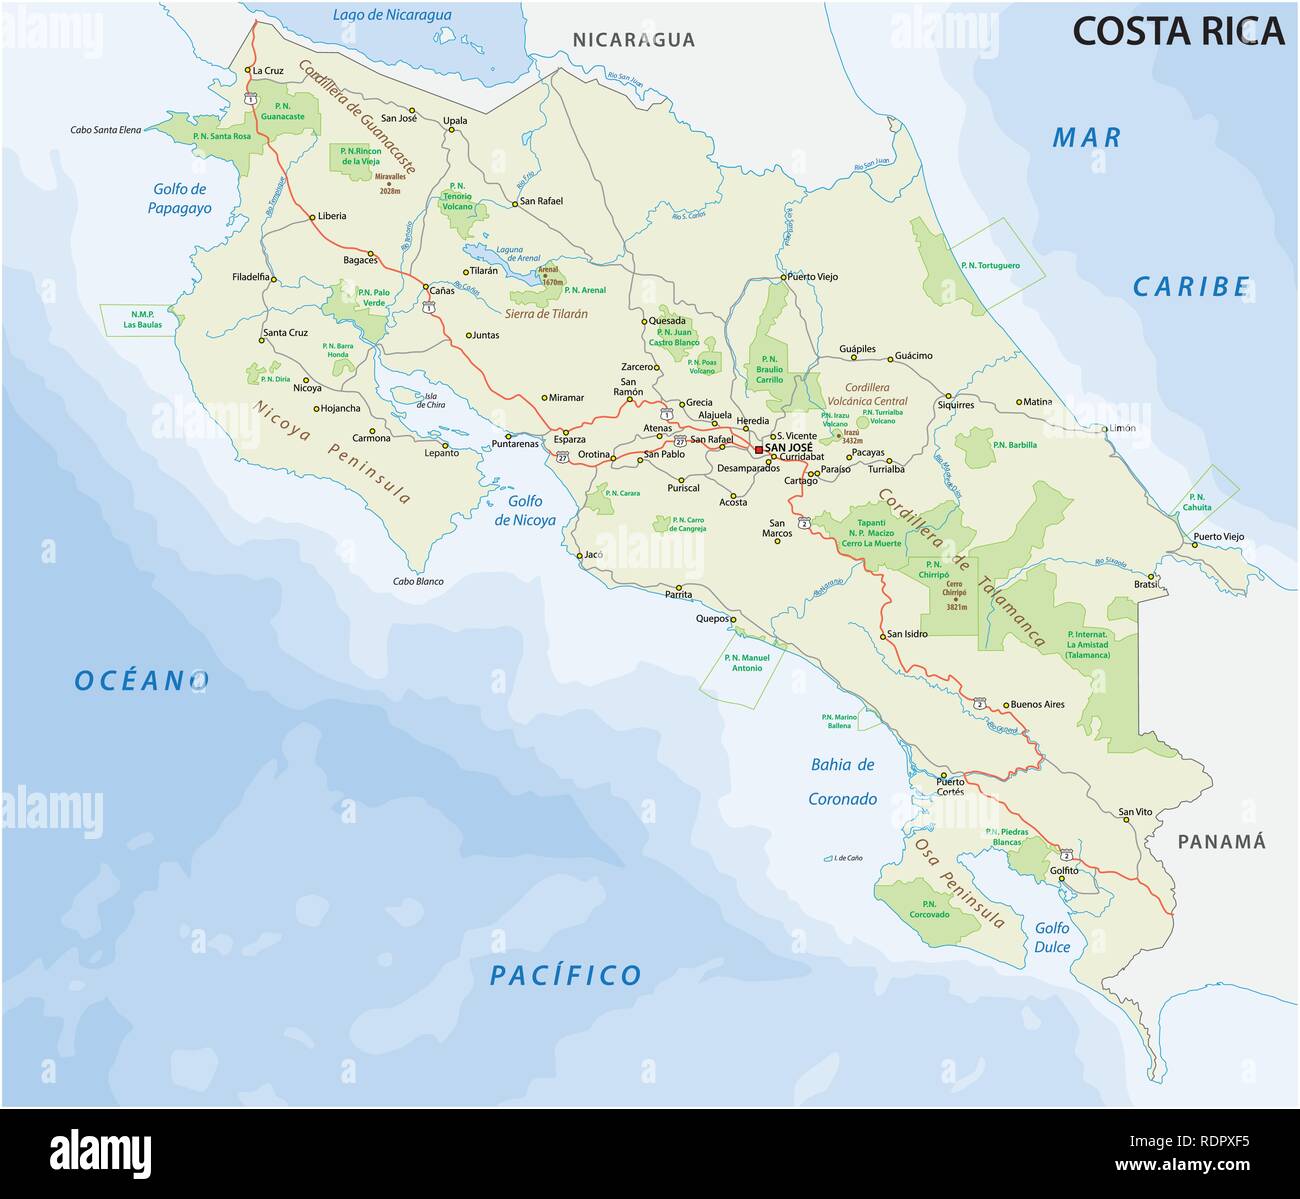 Costa rica road et le parc national de carte vectorielle Illustration de Vecteur